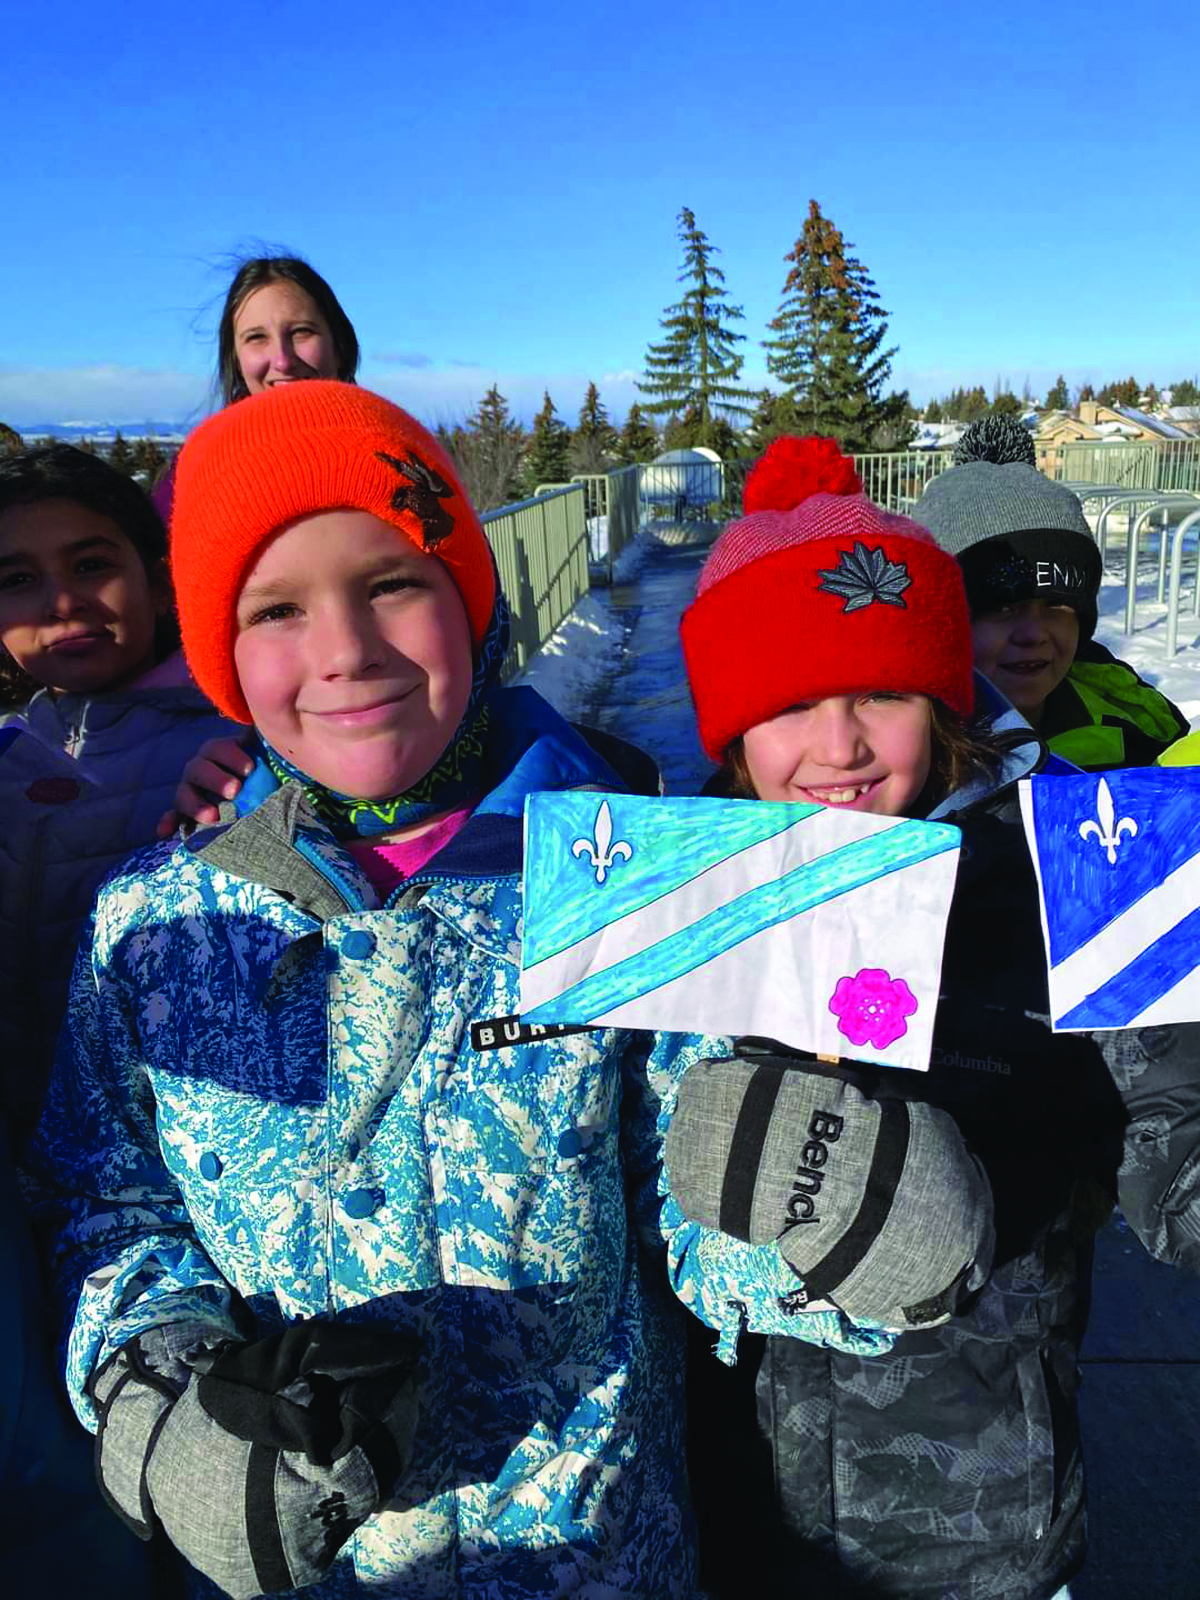 Children celebrate Franco-Albertan heritage